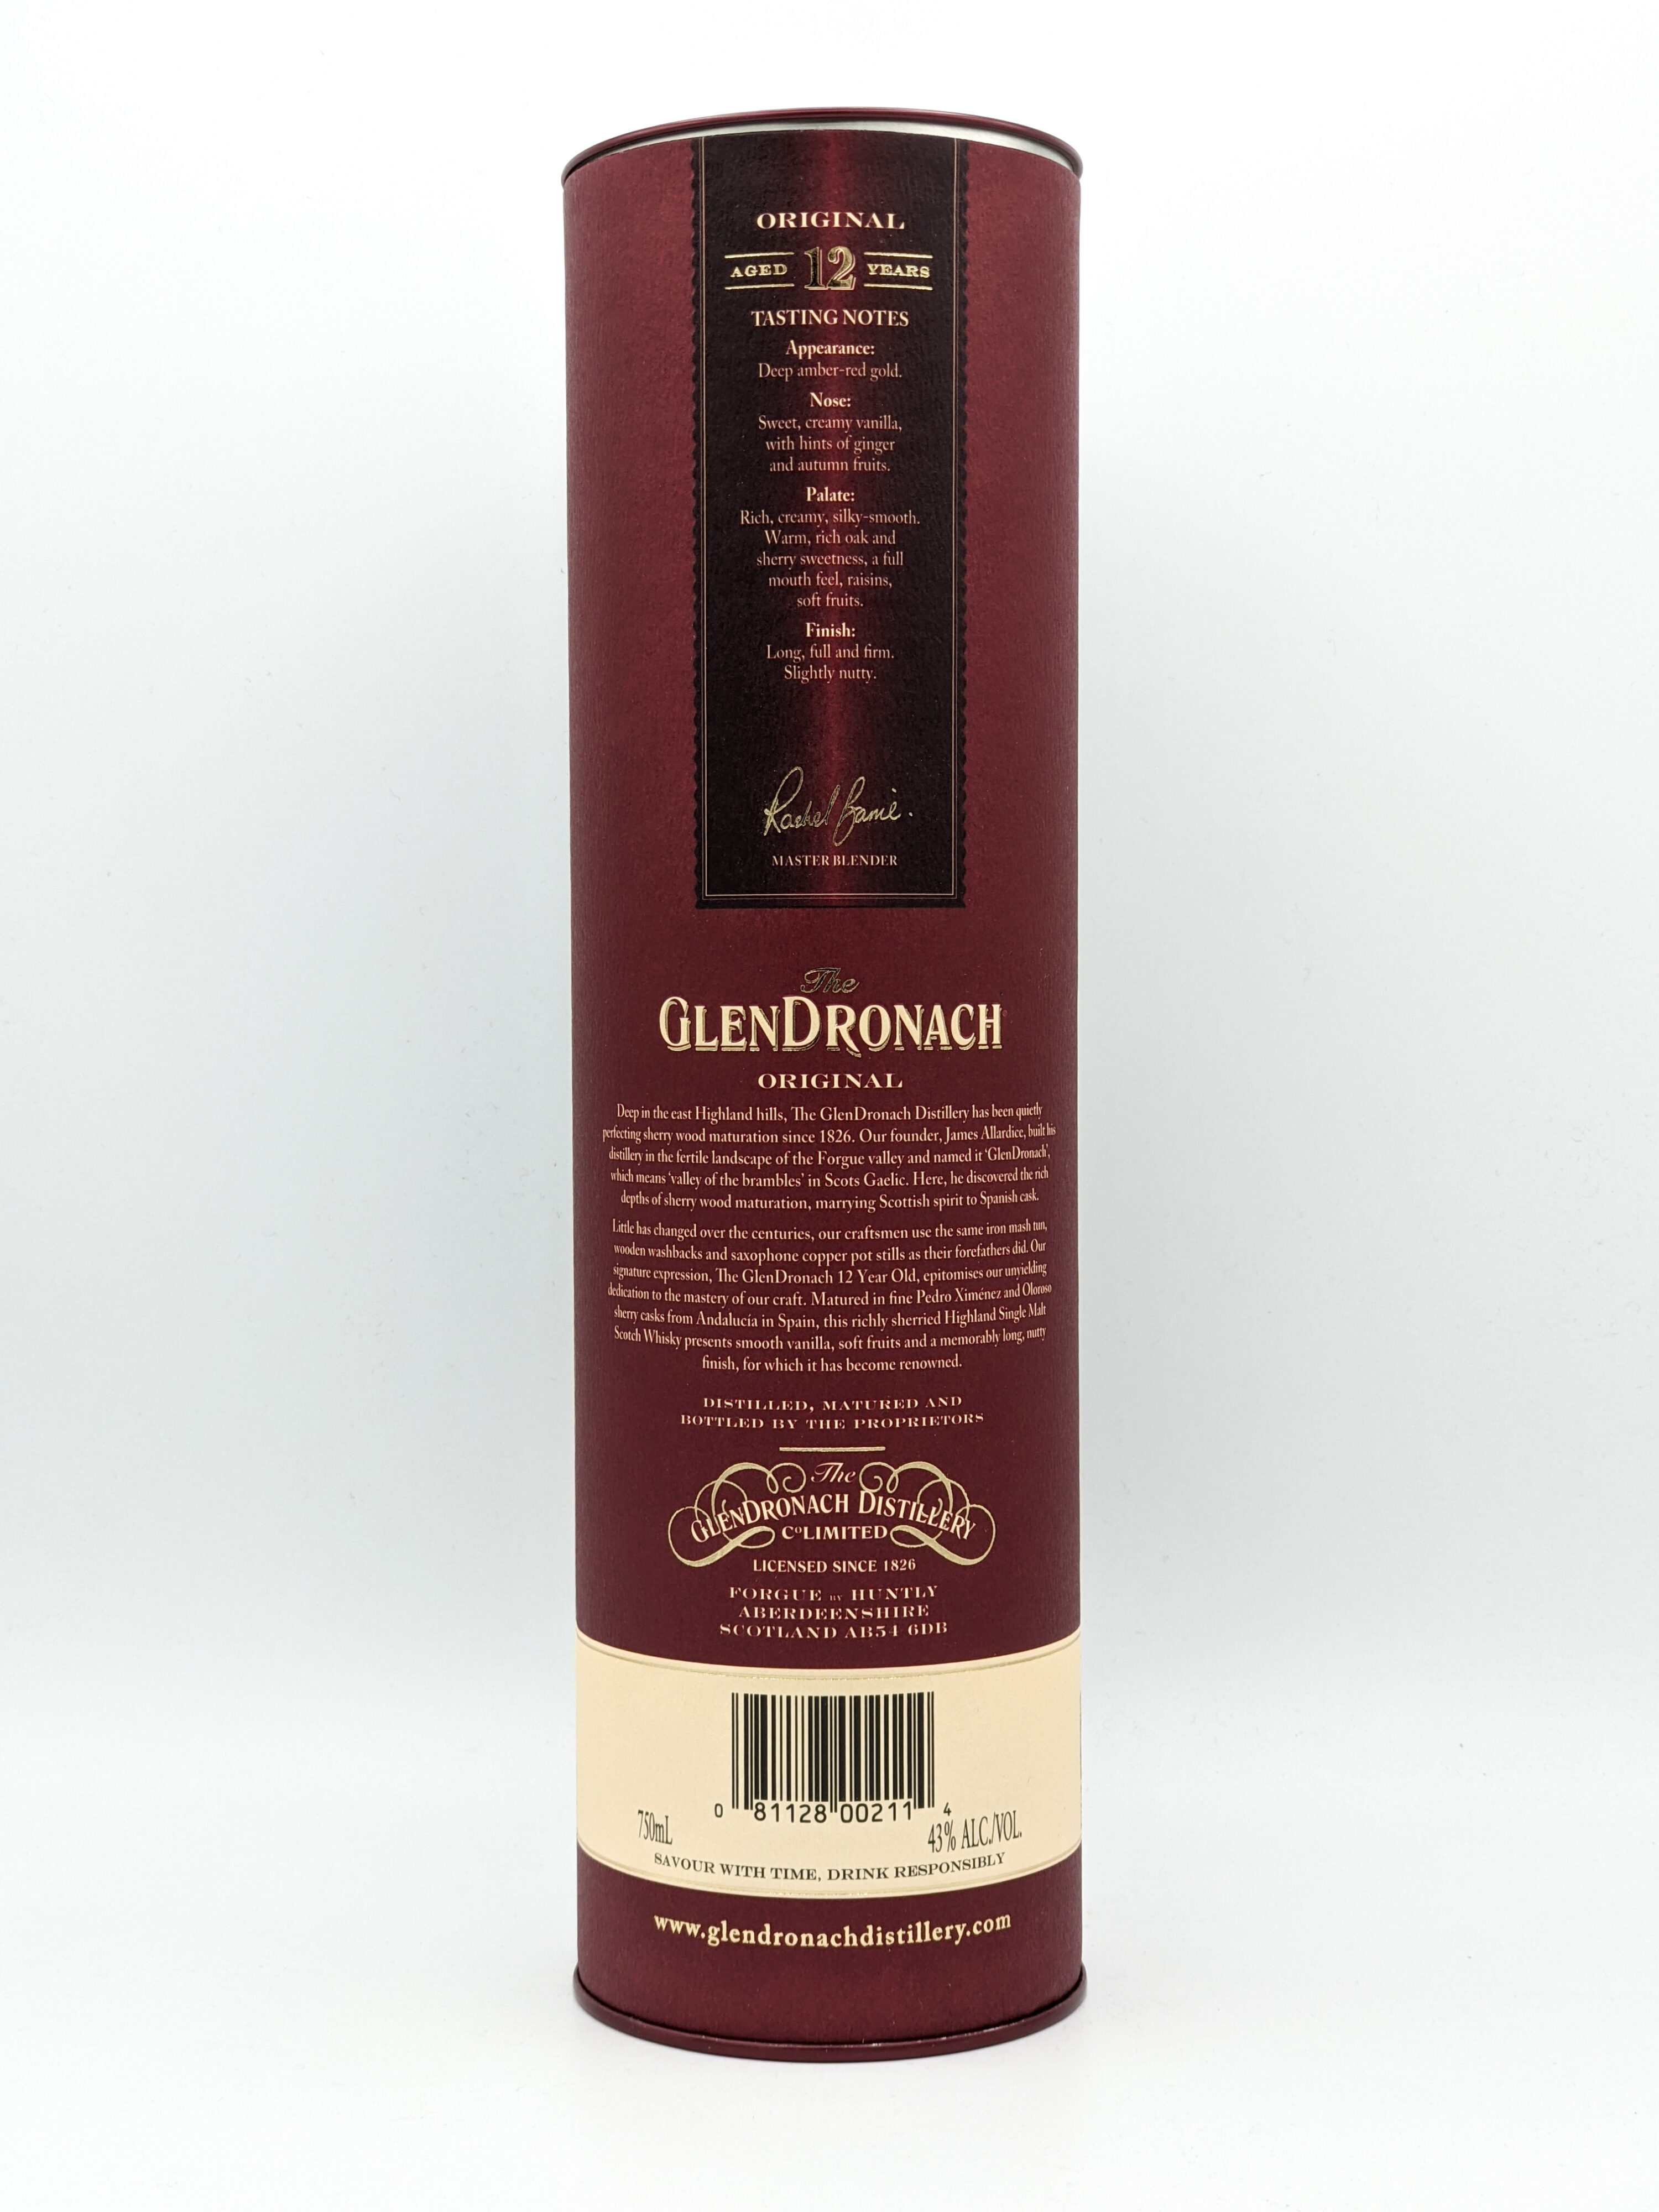 Range Free & Wine - Glendronach Original Spirits 12 year